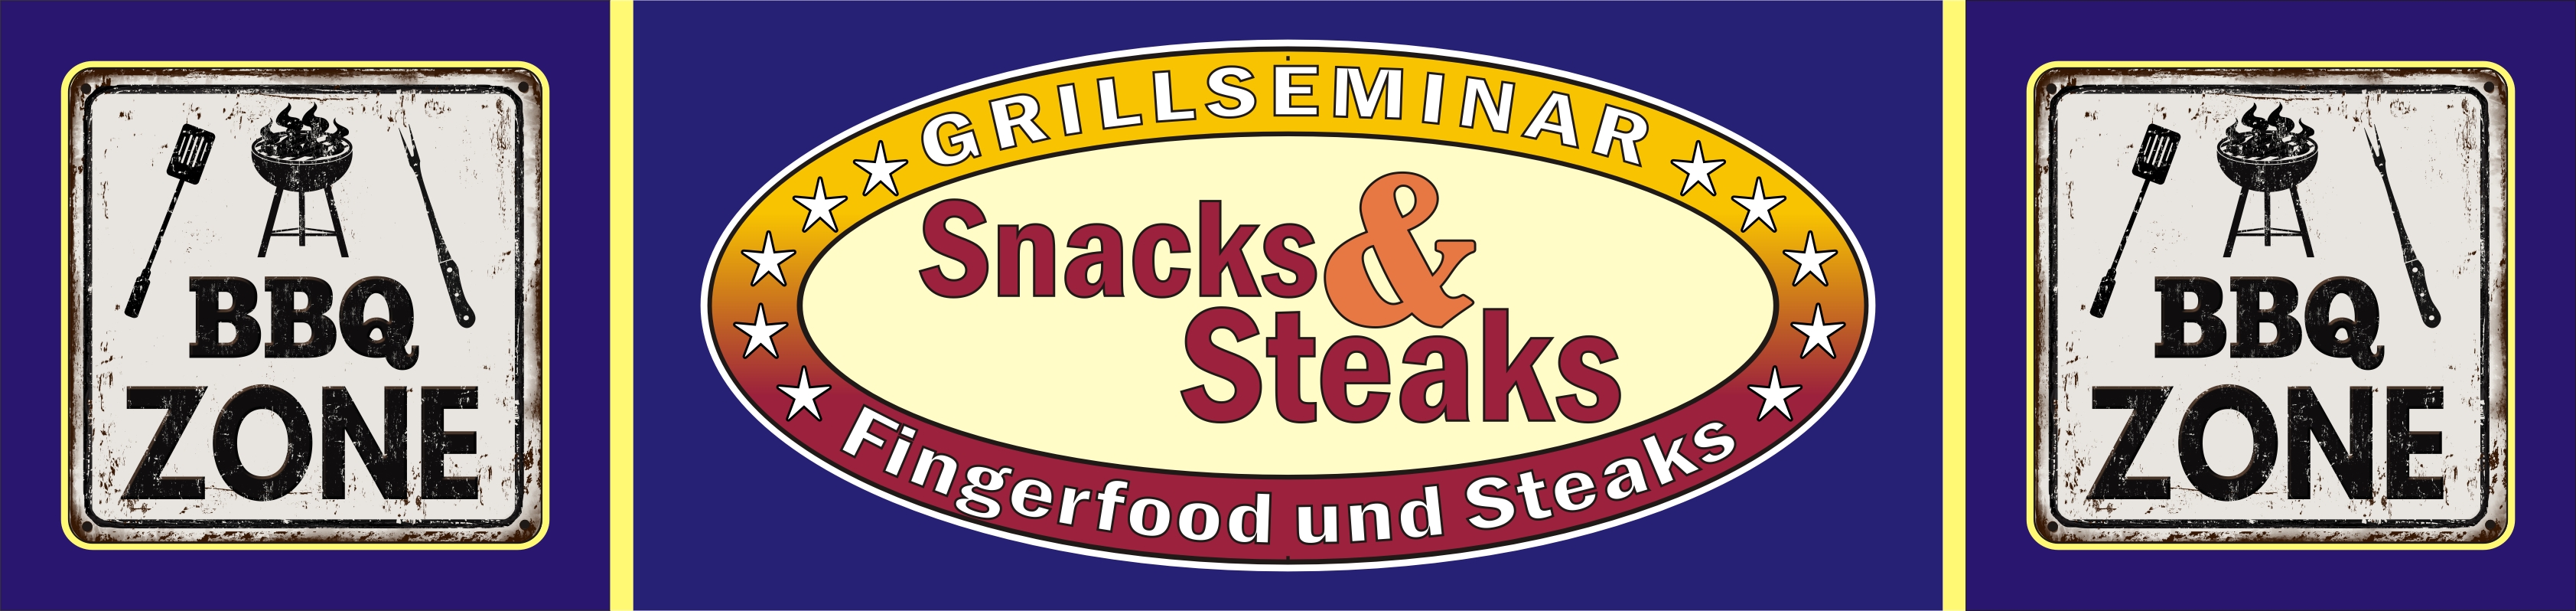 Grillkurs Snacks und Steaks